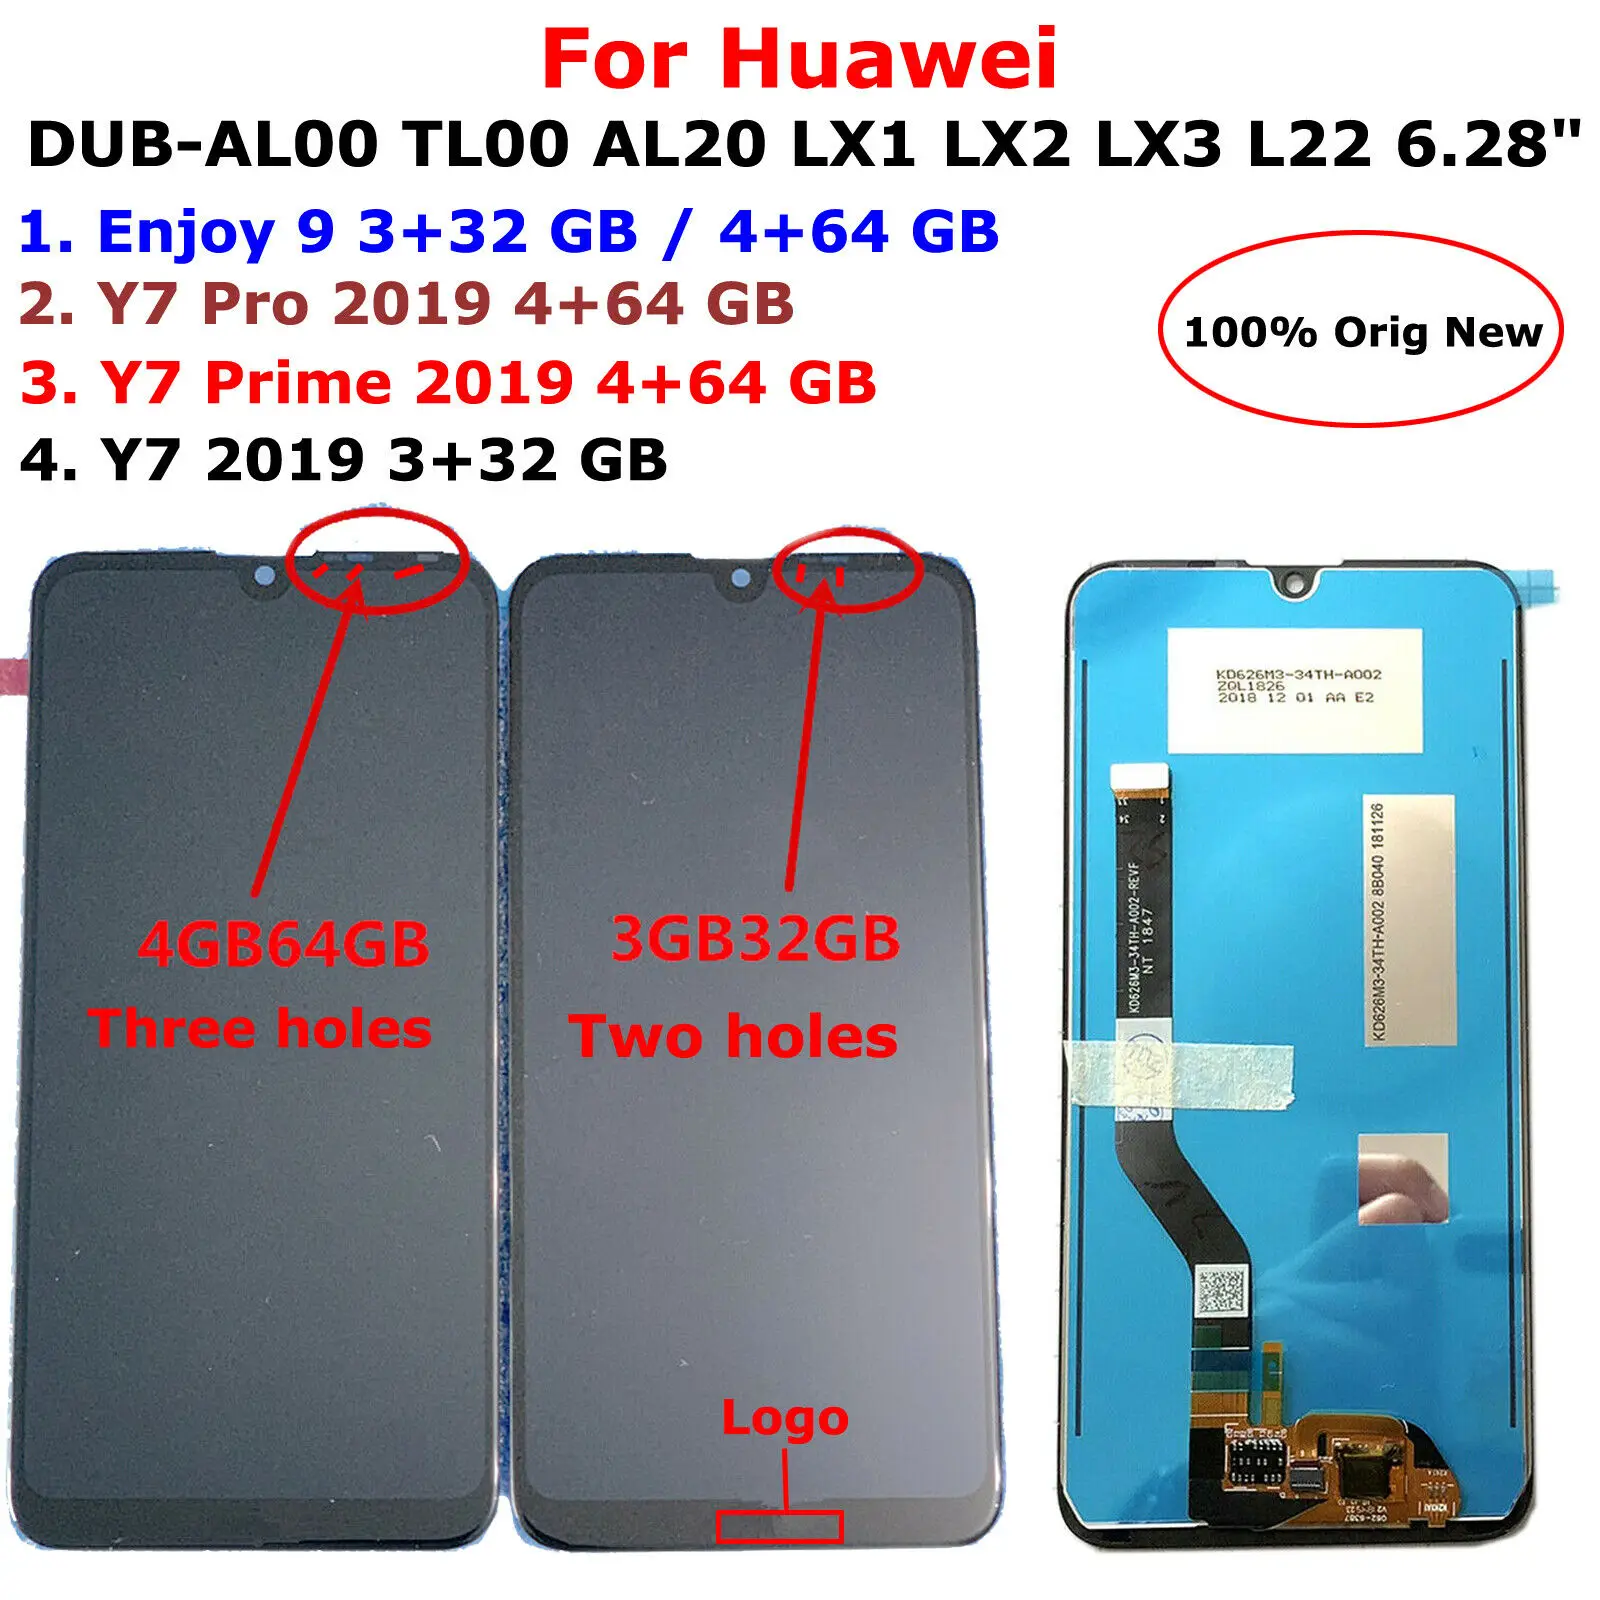 

Original 6.28" For Huawei Enjoy 9/Y7 /Y7 Prime /Y7 Pro 2019 DUB-AL00 TL00 AL20 LX1 LX2 LX3 L22 LCD Display Touch Screen